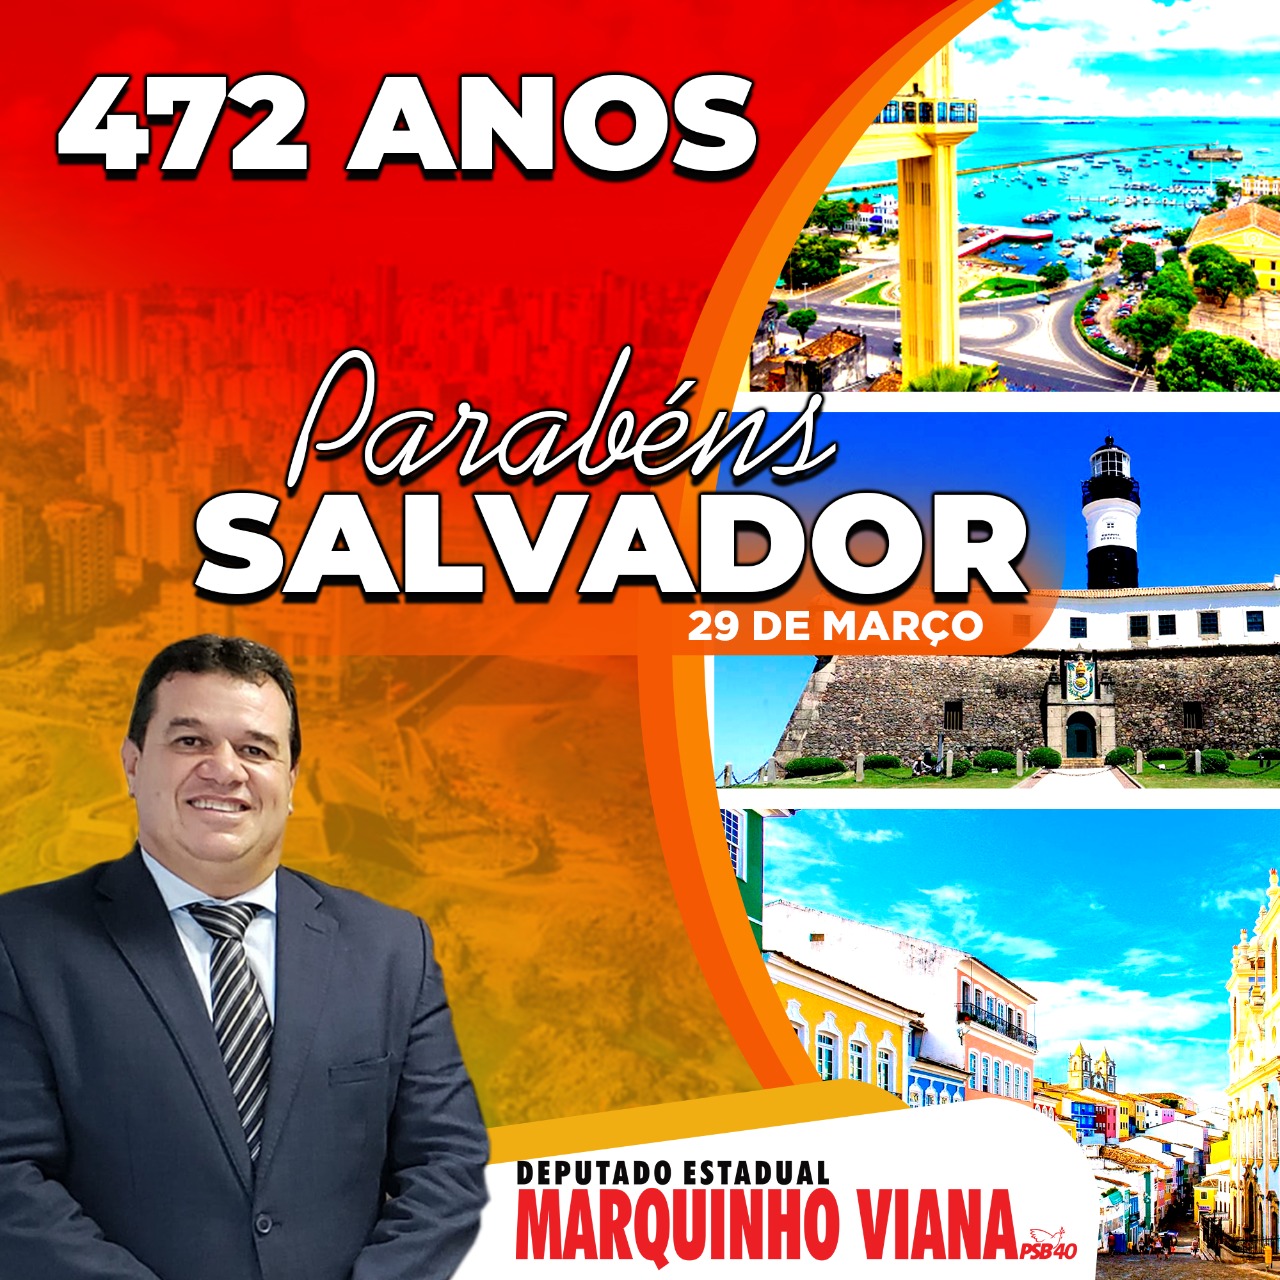 Deputado Marquinho Viana parabeniza Salvador pelos 472 anos de emancipação político administrativa